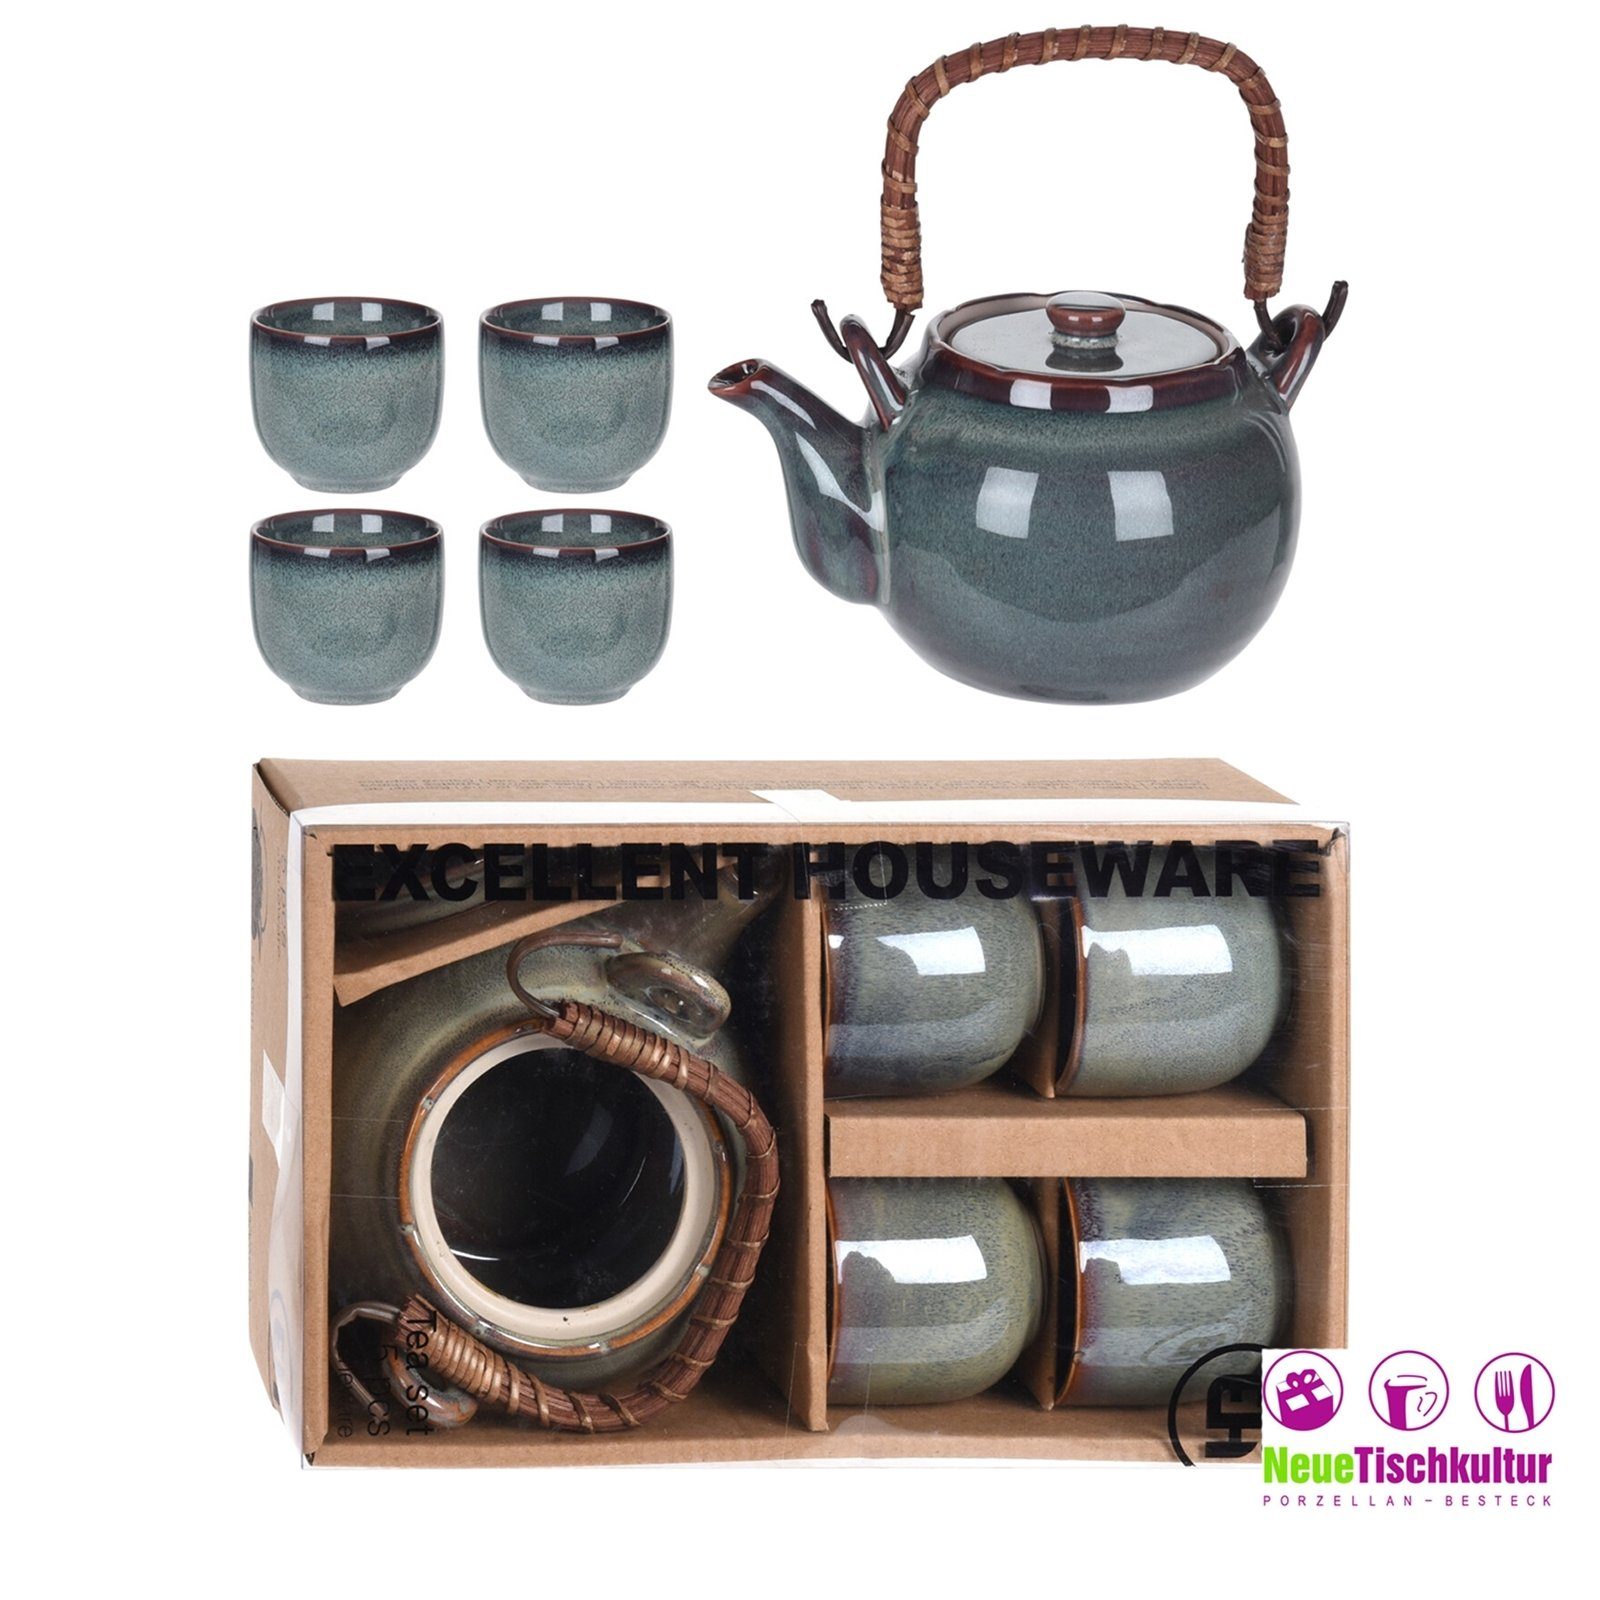 Neuetischkultur Teekanne Teekanne mit Becher 4 Keramik